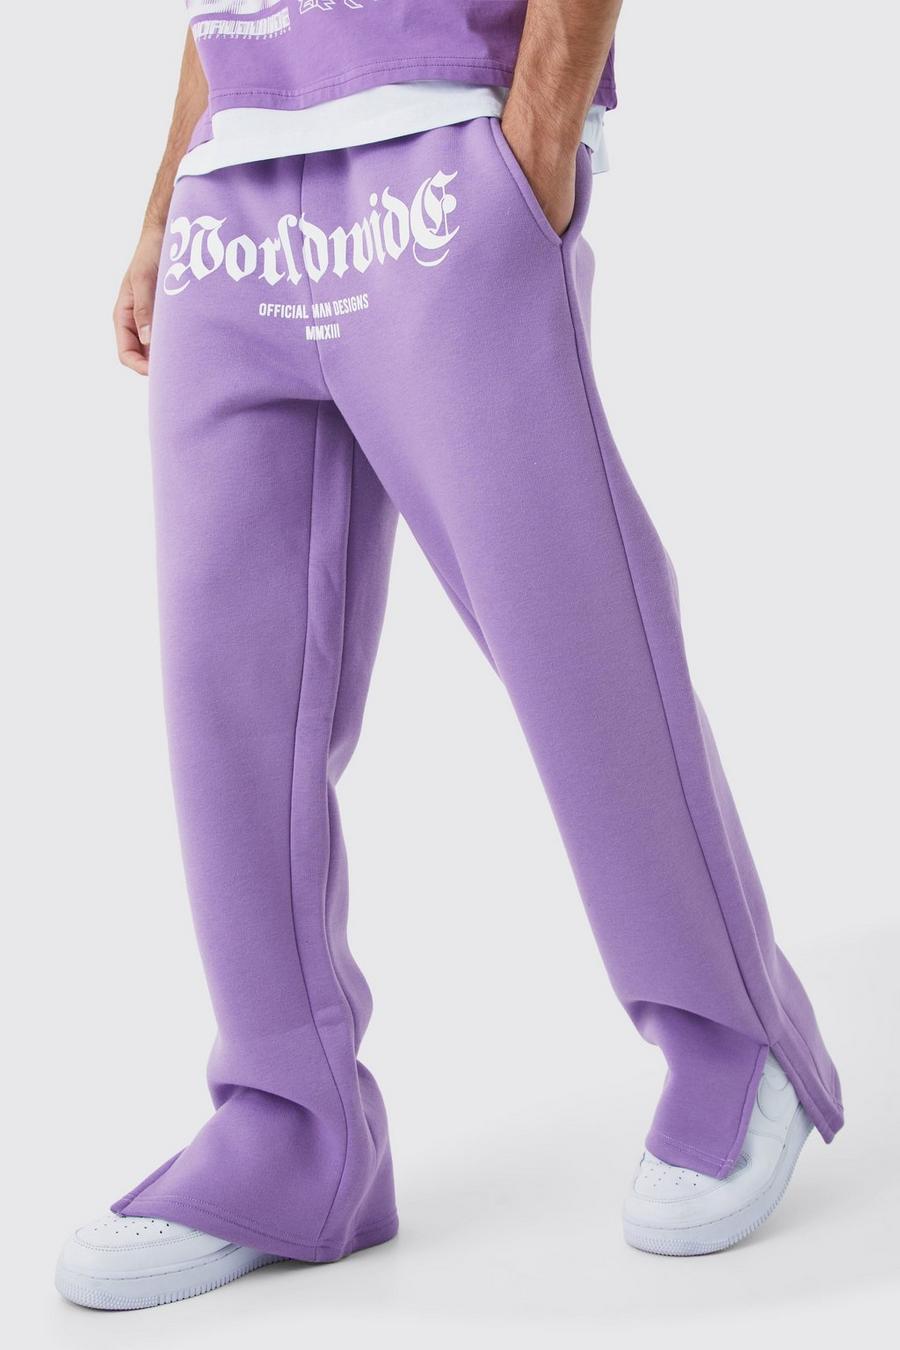 Pantalón deportivo con abertura en el bajo y estampado Worldwide en la entrepierna, Lilac image number 1